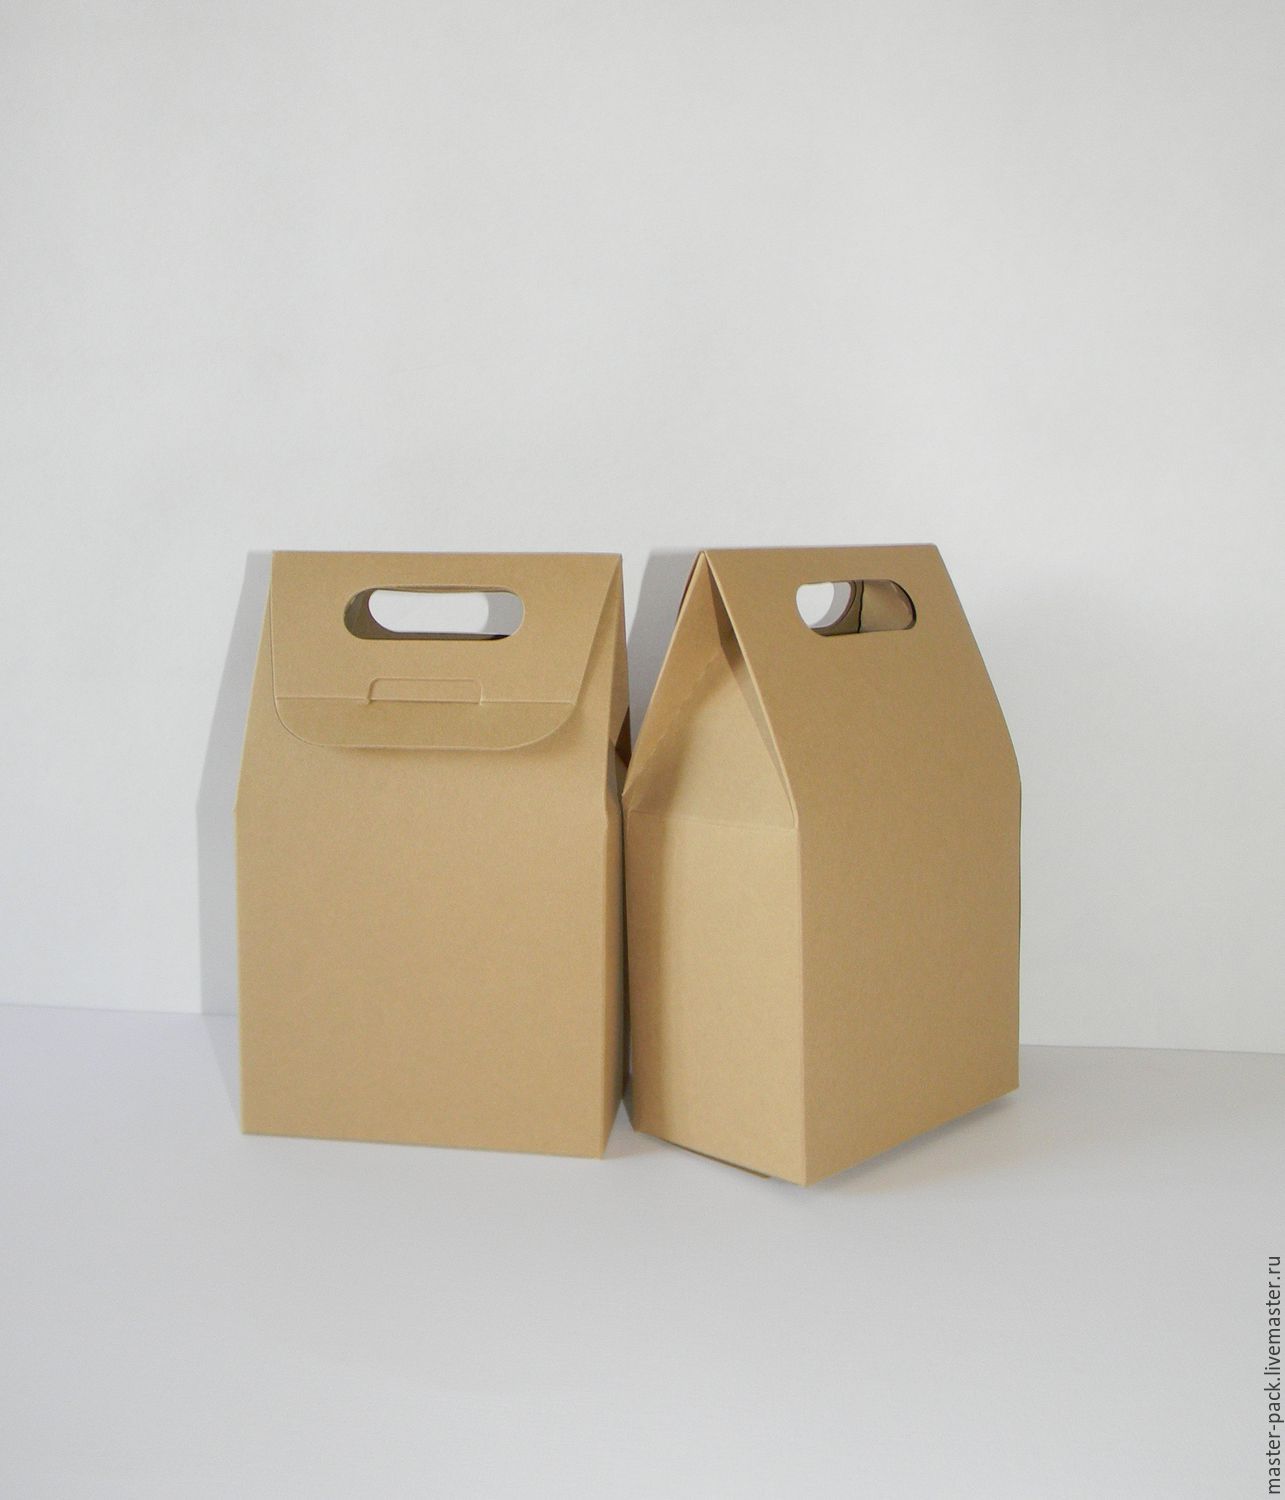 Декорирование коробок своими руками - краткая инструкция и варианты оформления с фото